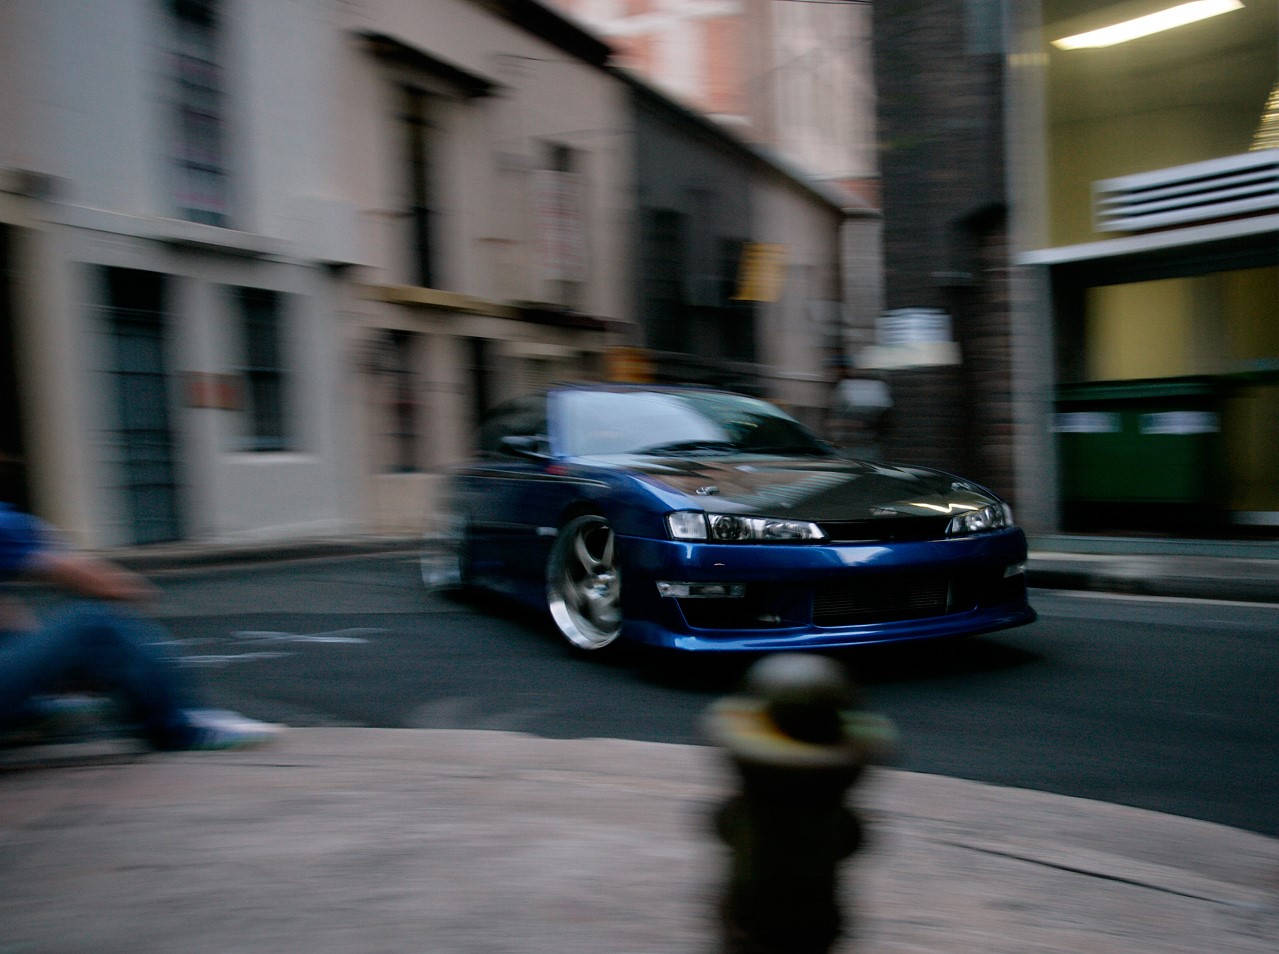 Blurred Nissan Silvia S14 Wallpaper